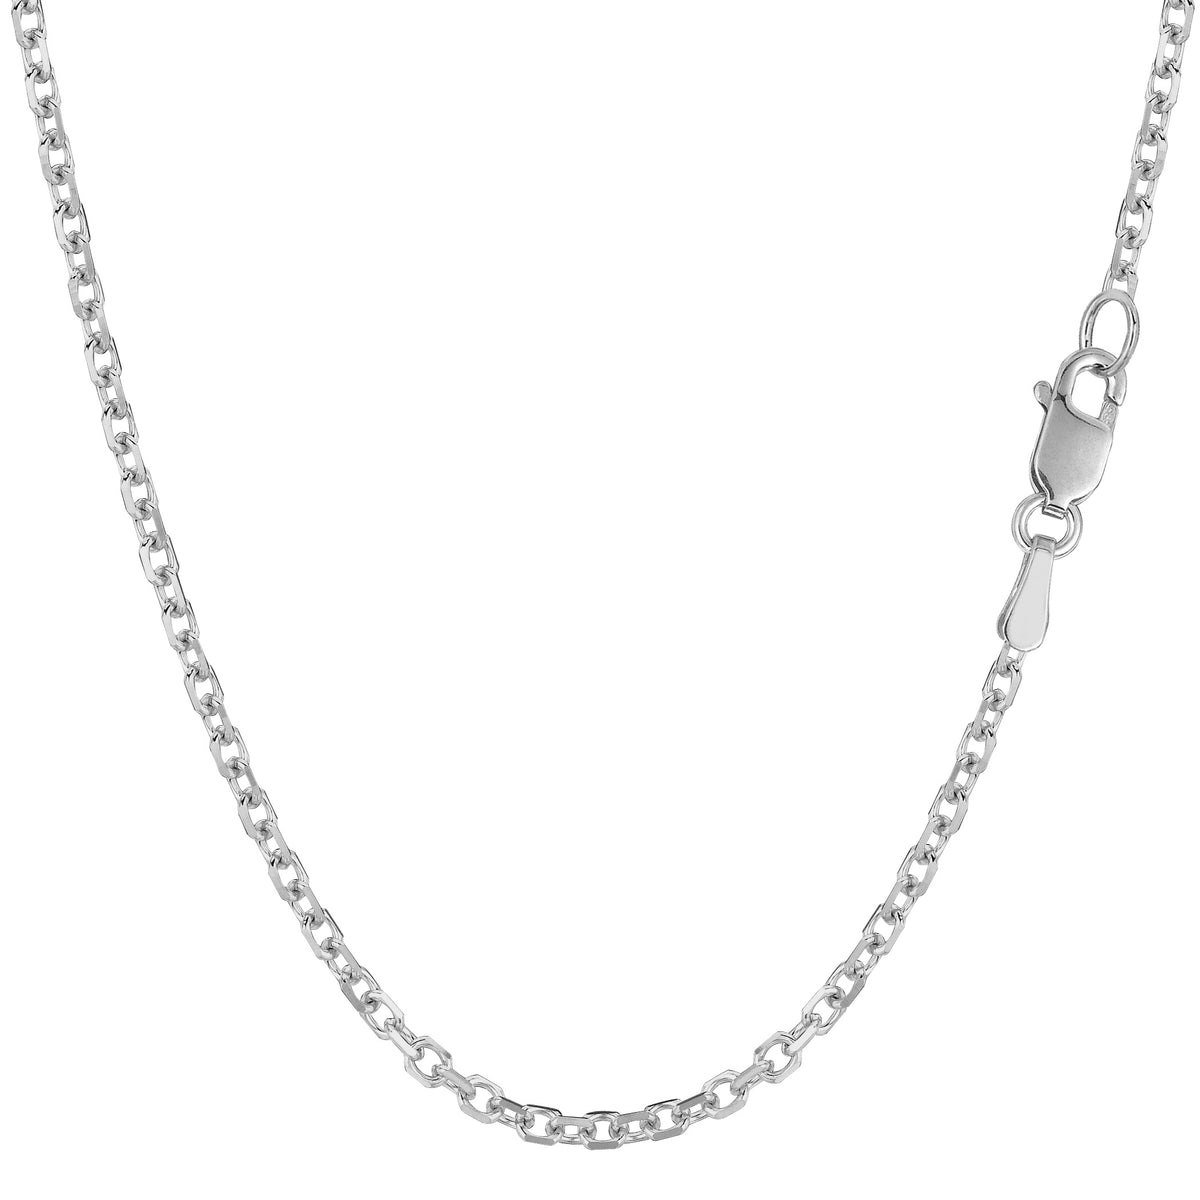 Collar de cadena con eslabones tipo cable de oro blanco de 14 k, joyería fina de diseño de 2,3 mm para hombres y mujeres